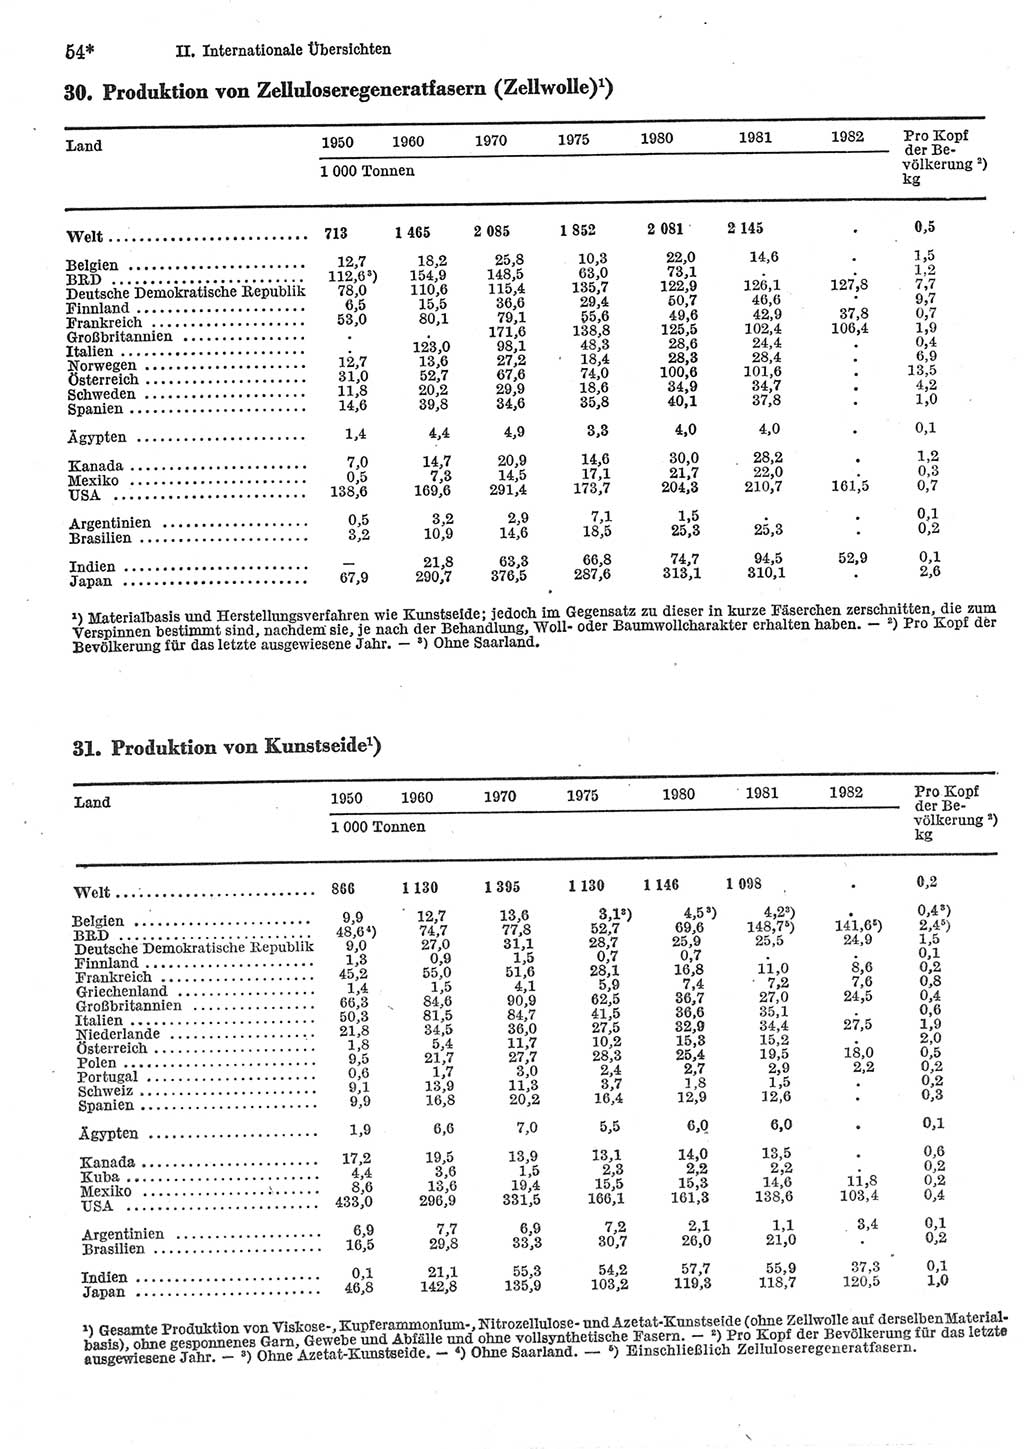 Statistisches Jahrbuch der Deutschen Demokratischen Republik (DDR) 1984, Seite 54 (Stat. Jb. DDR 1984, S. 54)